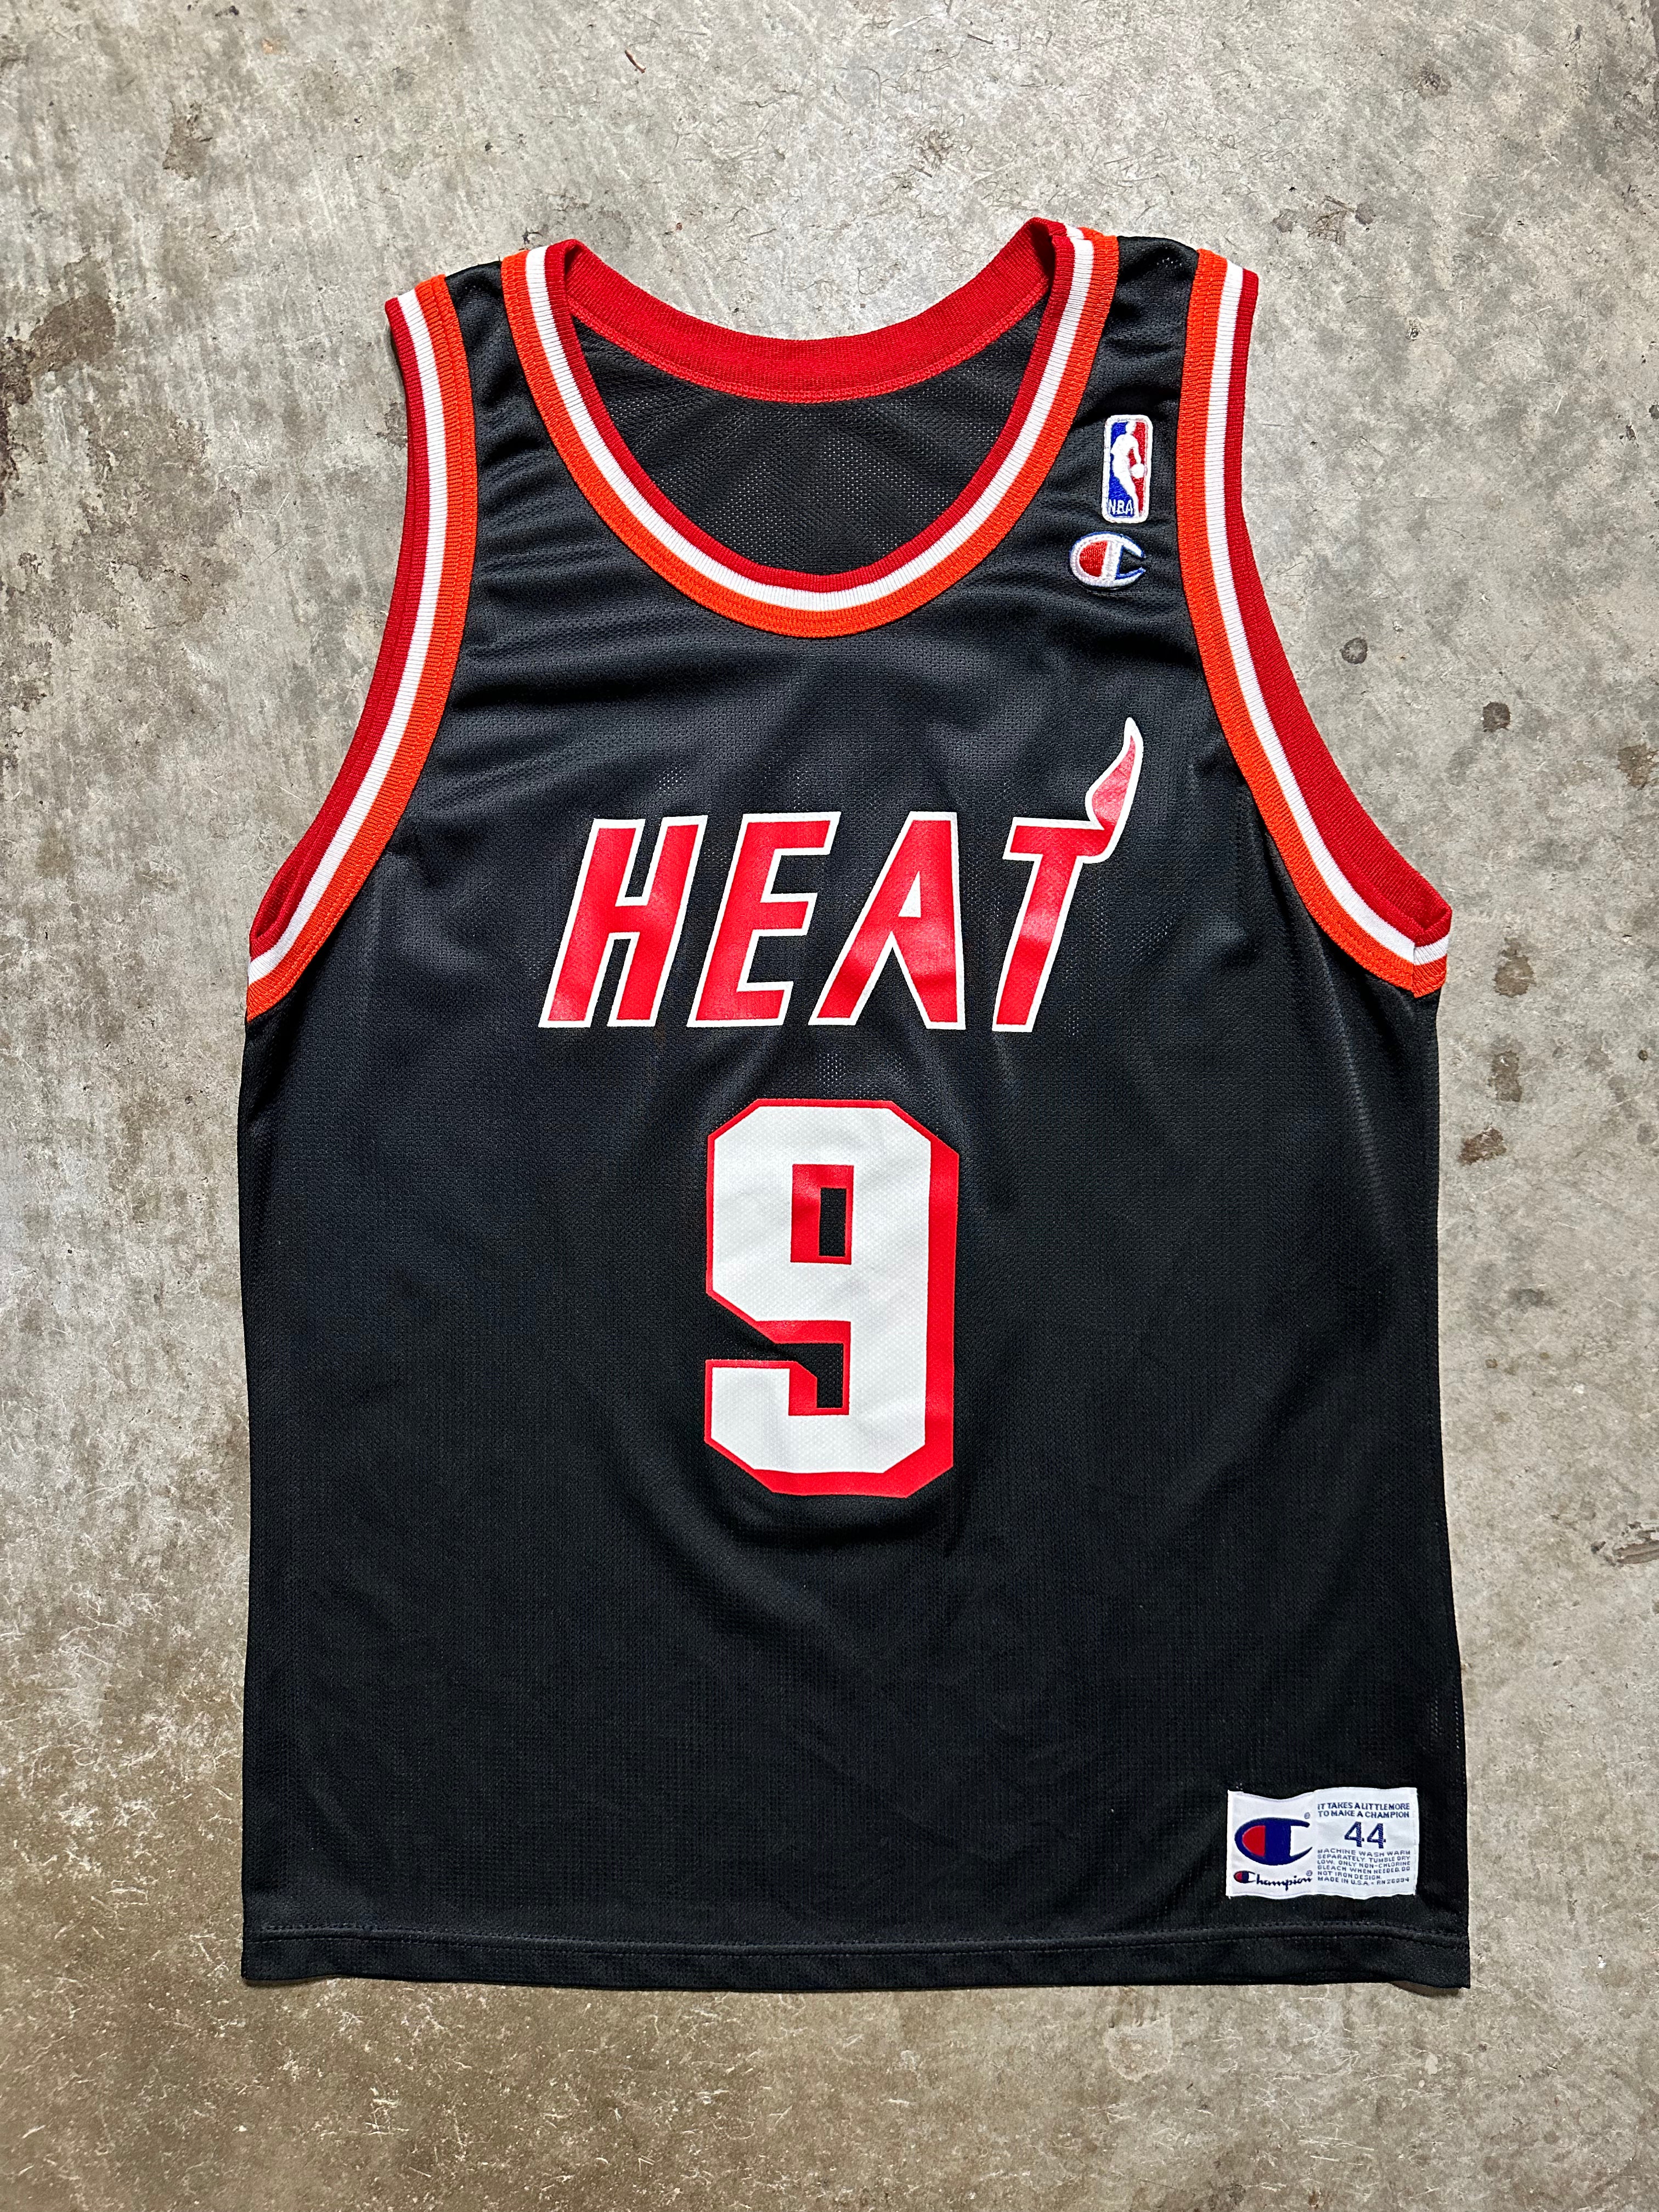 Heat Champion Jersey 